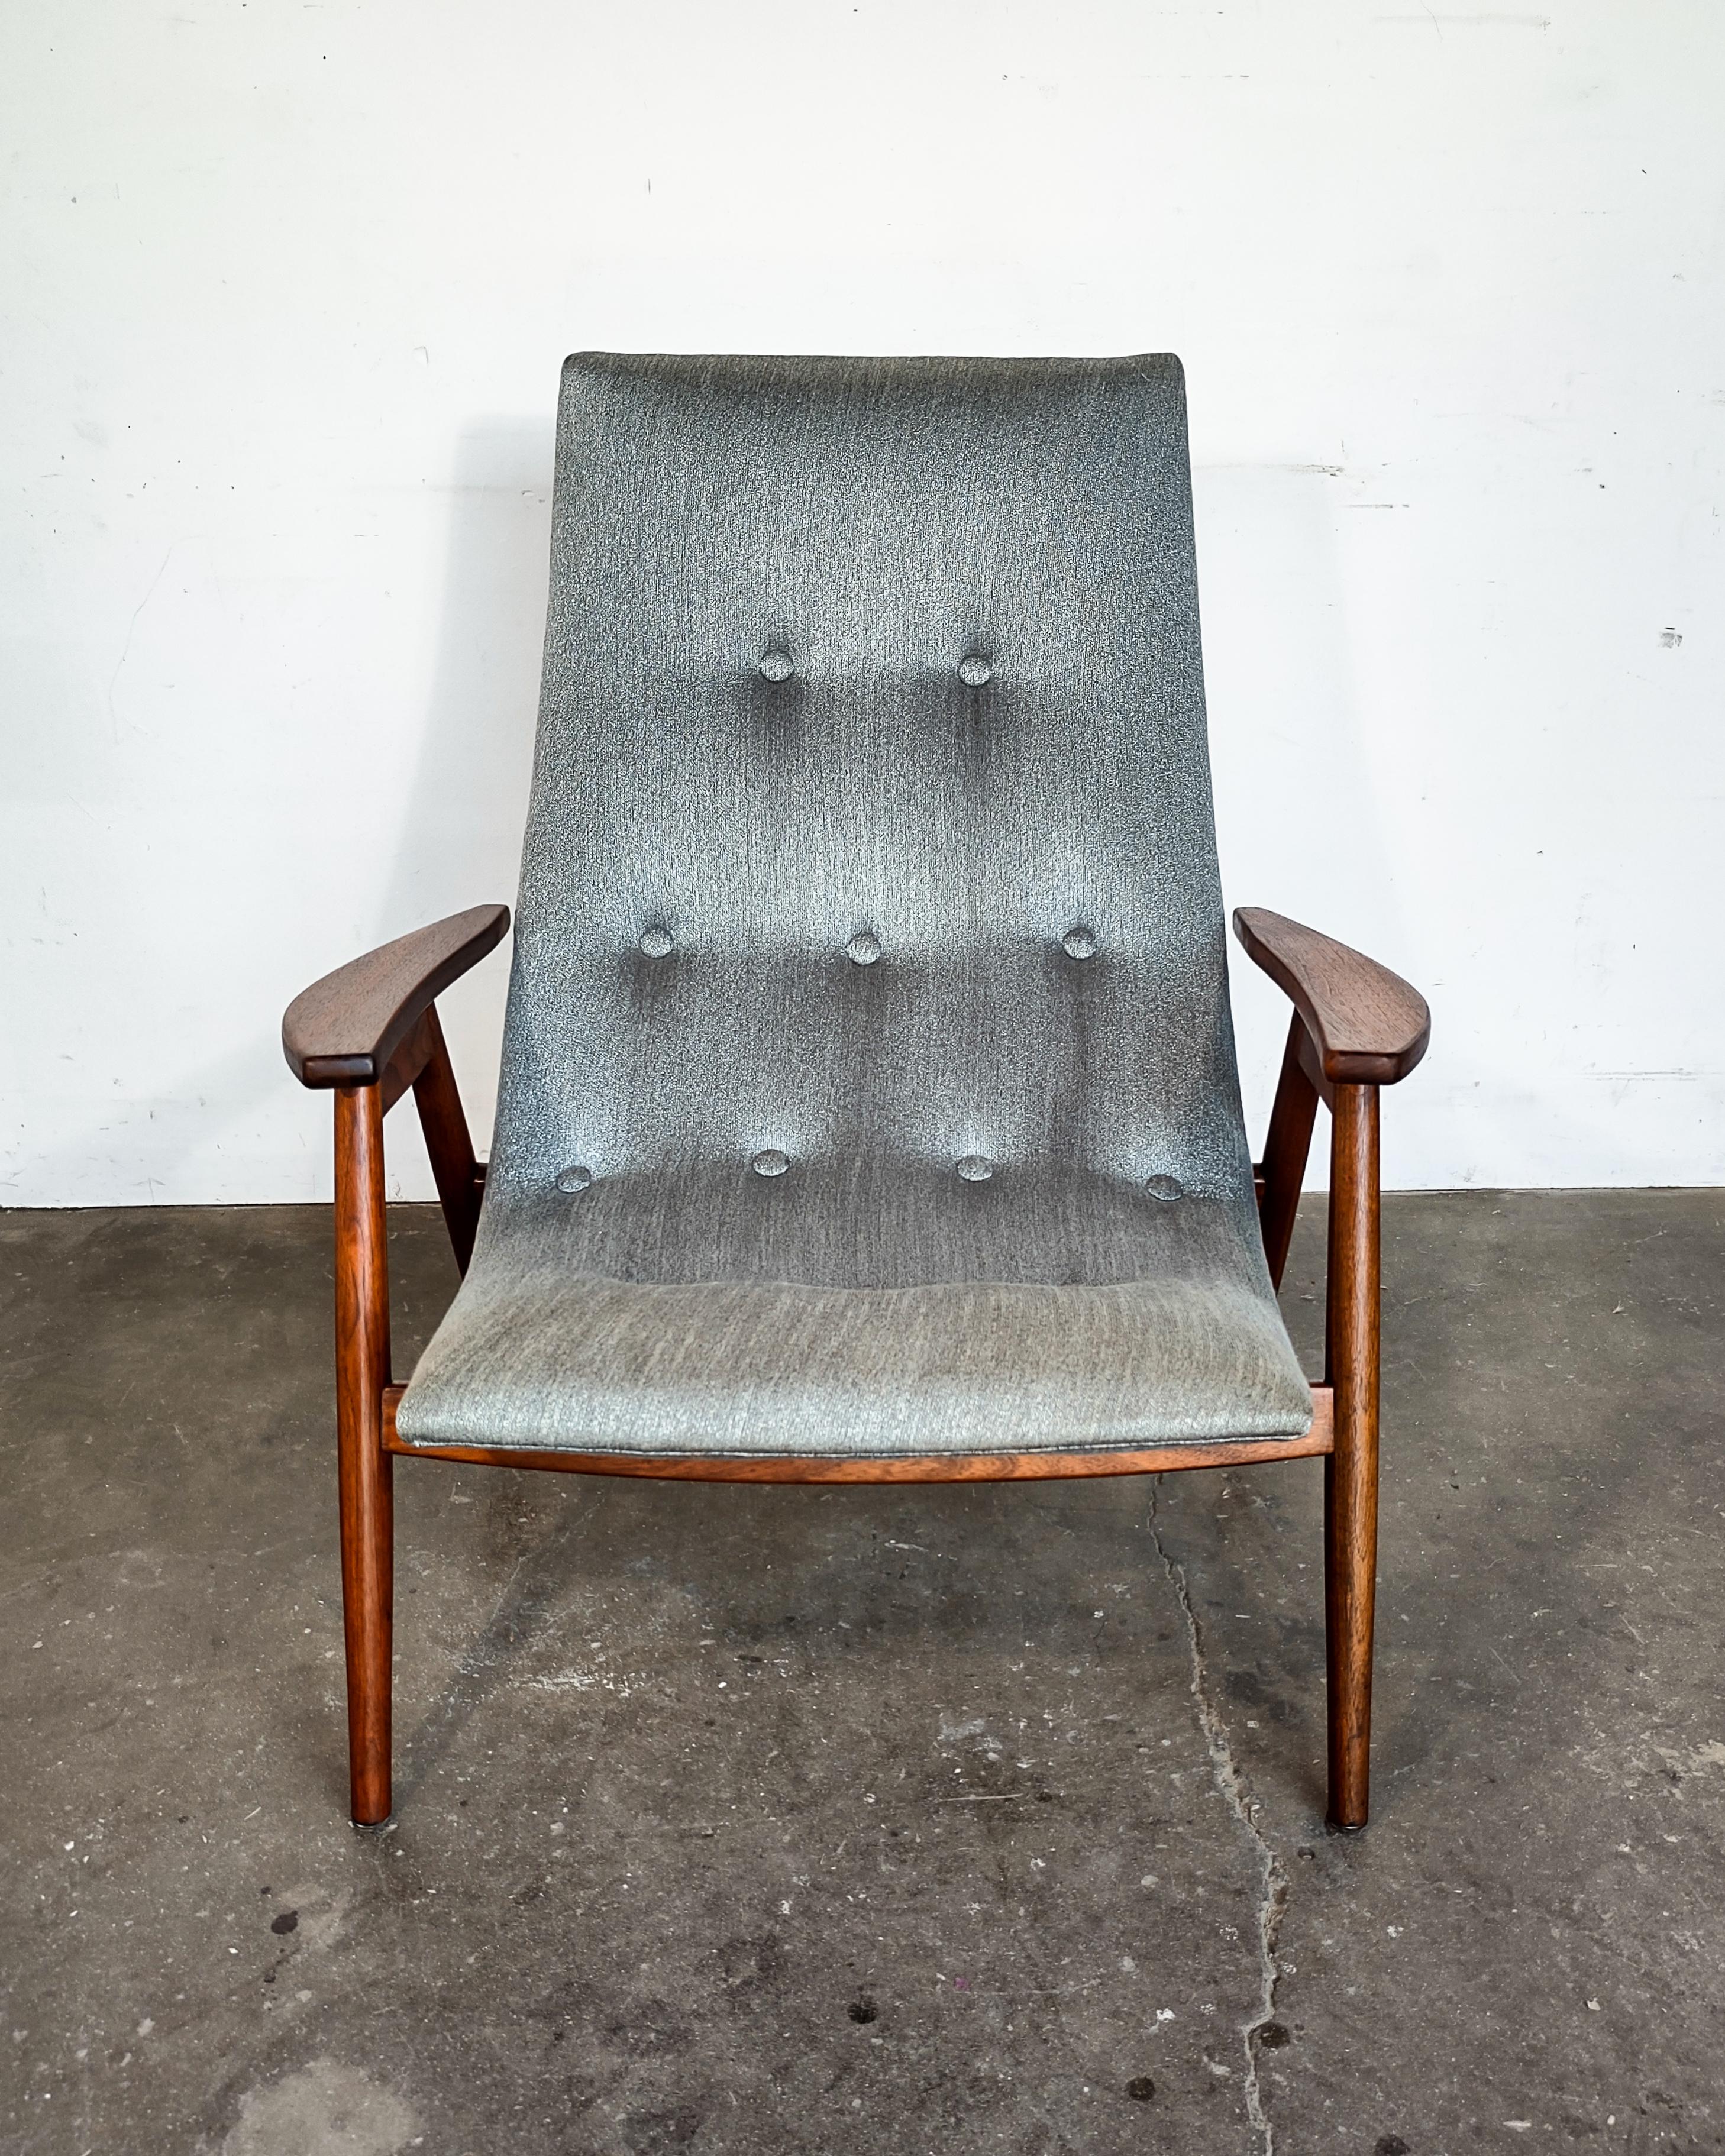 La chaise coquille d'œuf a été conçue en 1957 par Allan Gould exclusivement pour Thayer. La chaise longue est dotée d'un cadre en contreplaqué plié à la vapeur ainsi que d'un cadre extérieur et d'accoudoirs en noyer massif. 

Mesures : 30